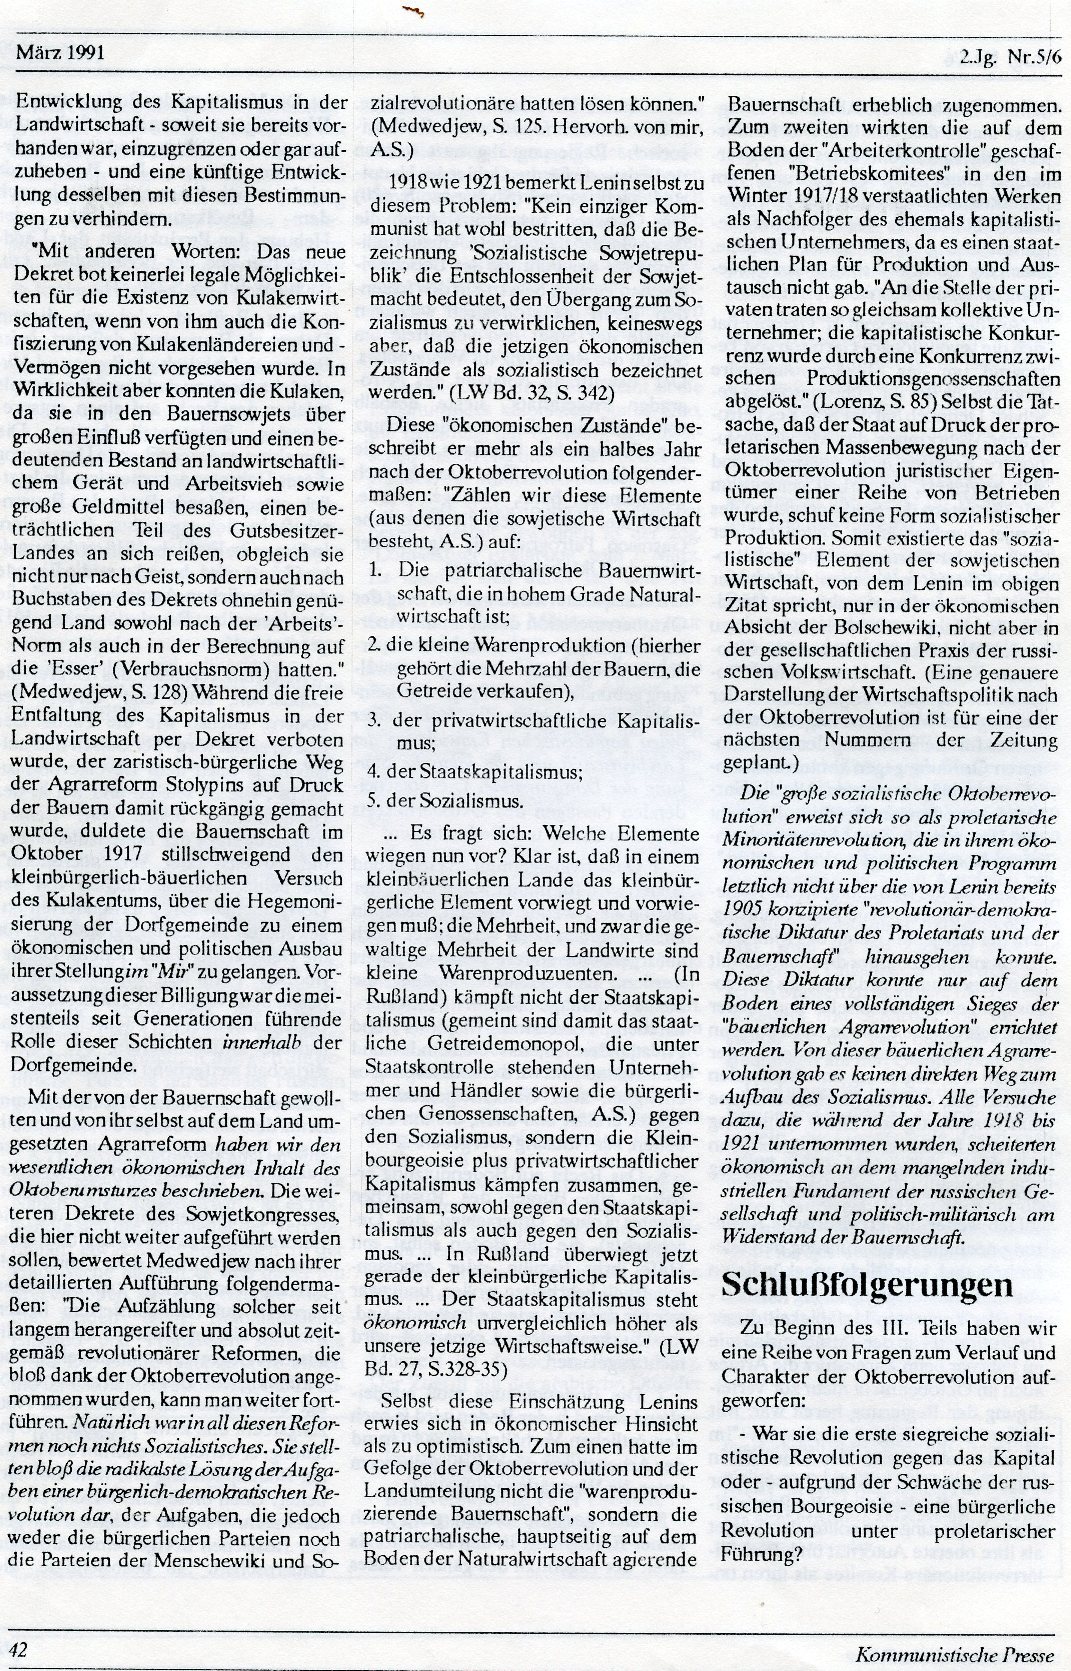 Gelsenkirchen_Kommunistische_Presse_1991_05_06_042